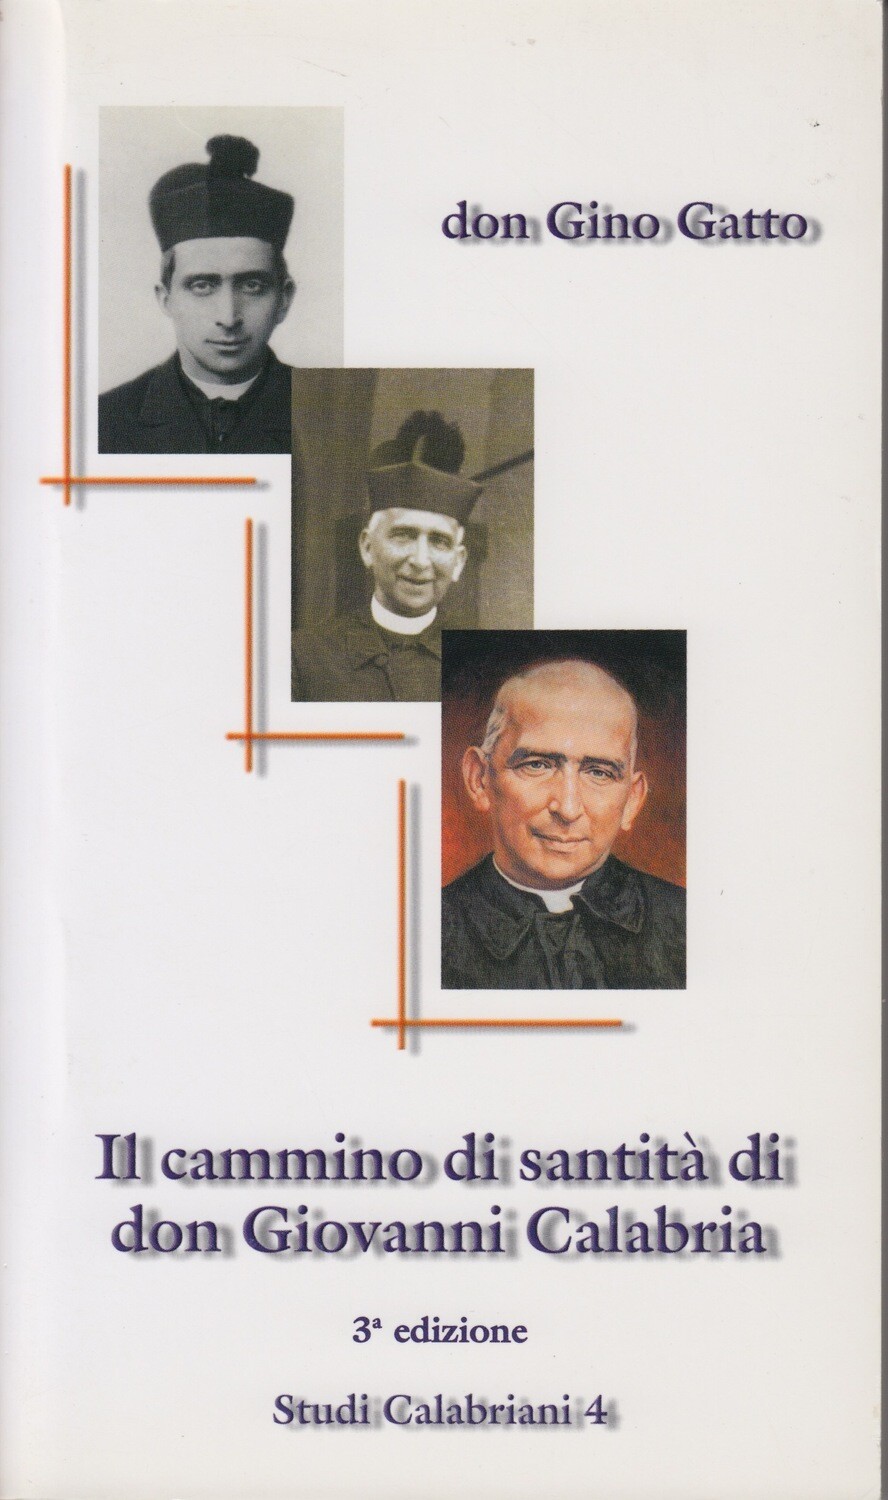 Il cammino di santità di don Giovanni Calabria